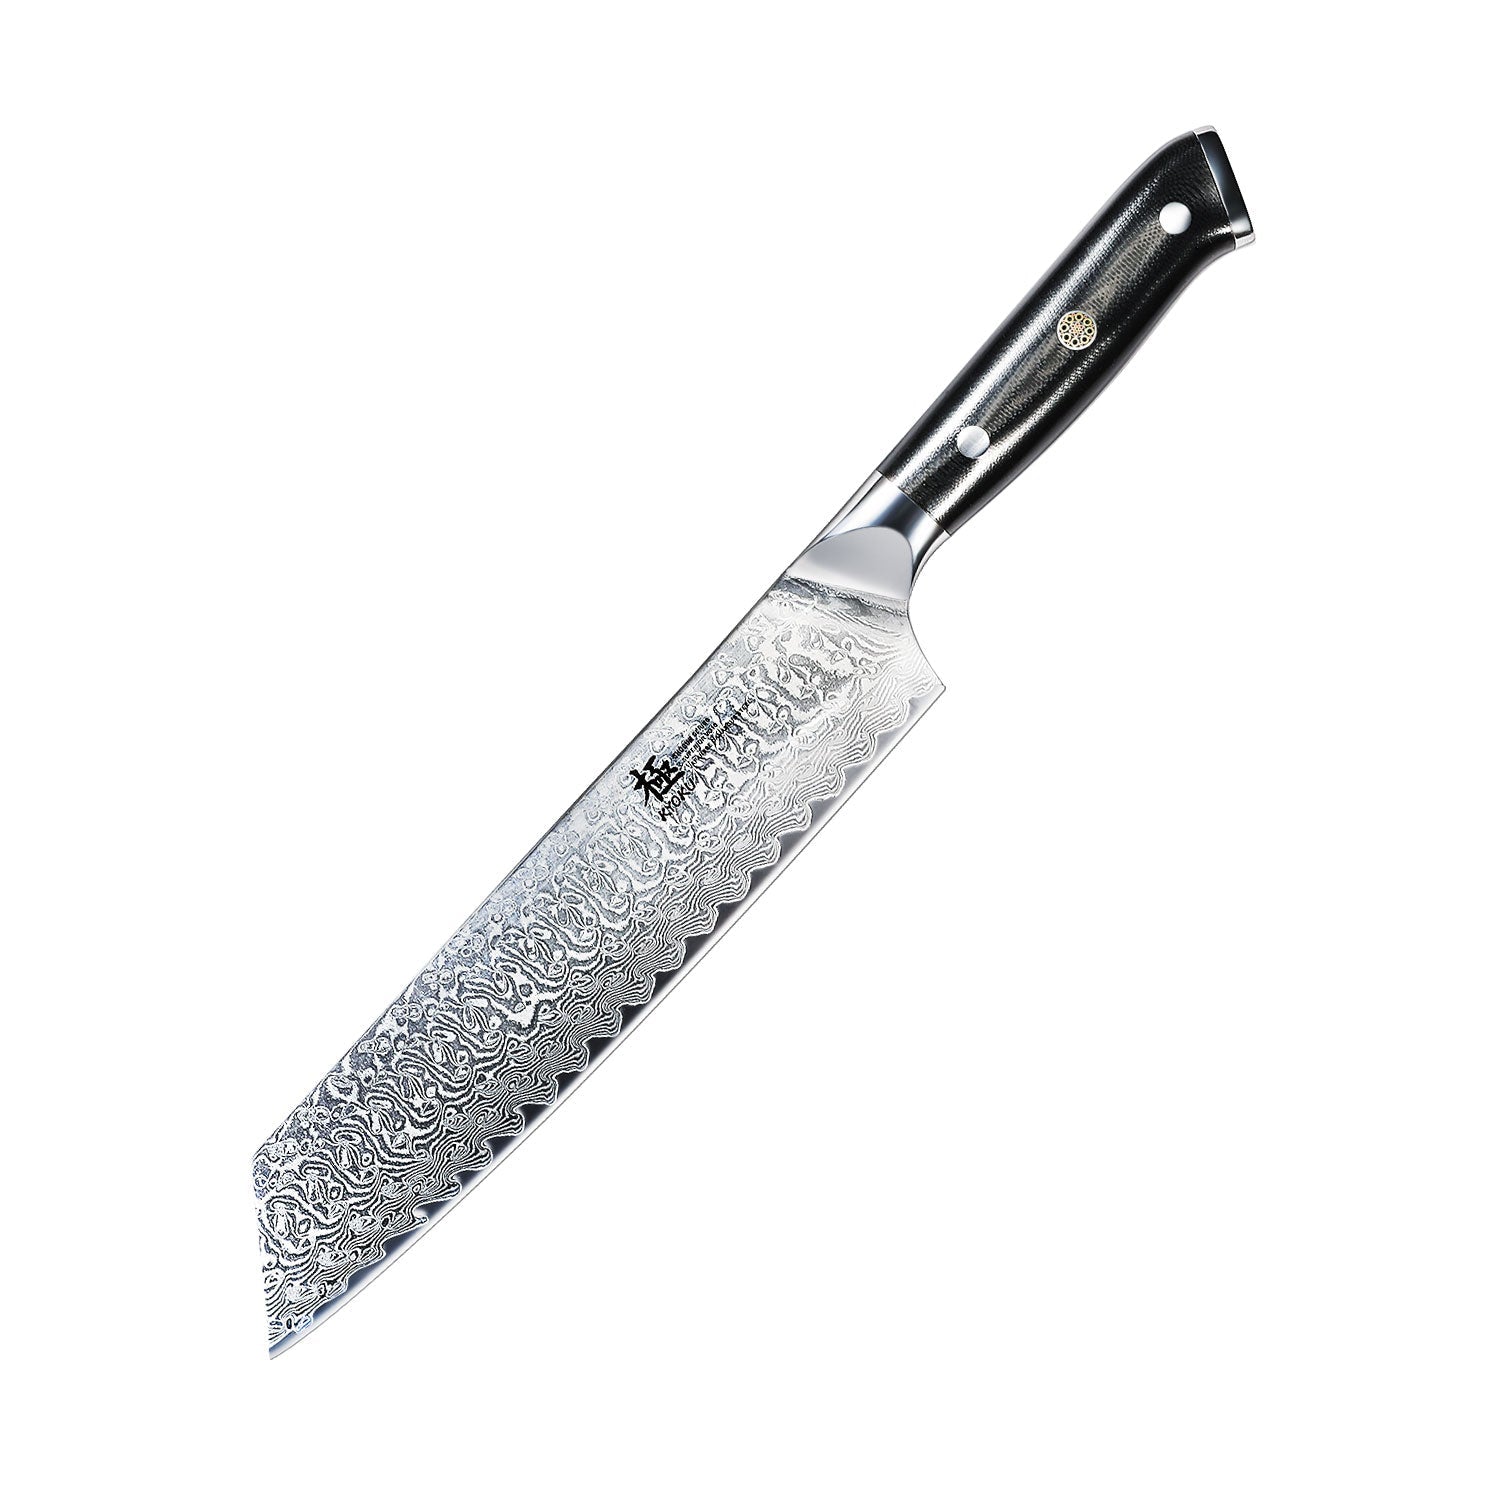 https://kyokuknives.com/cdn/shop/files/Kiritsuke-Knives-VG10-Damascus-Steel---Shogun-Series-Kyoku-Knives-1697012864236.jpg?v=1697612348